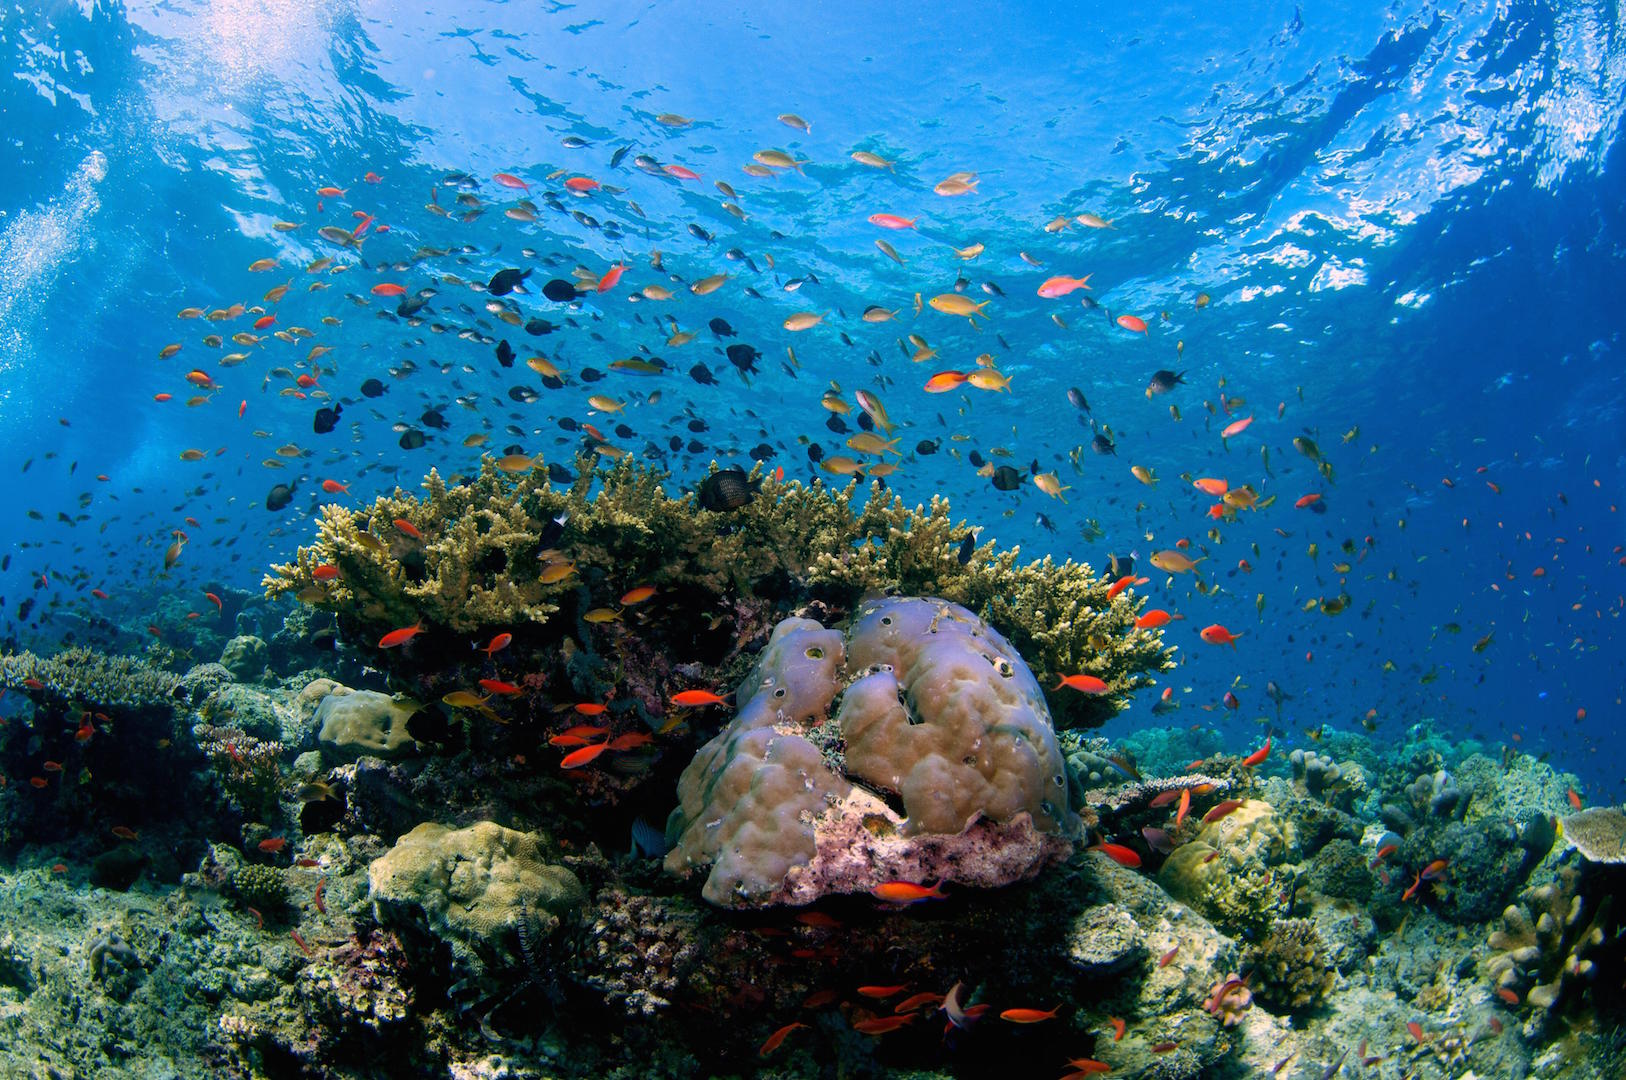 High biodiversity of a tropical coral reef in Sipadan Island, Malaysia